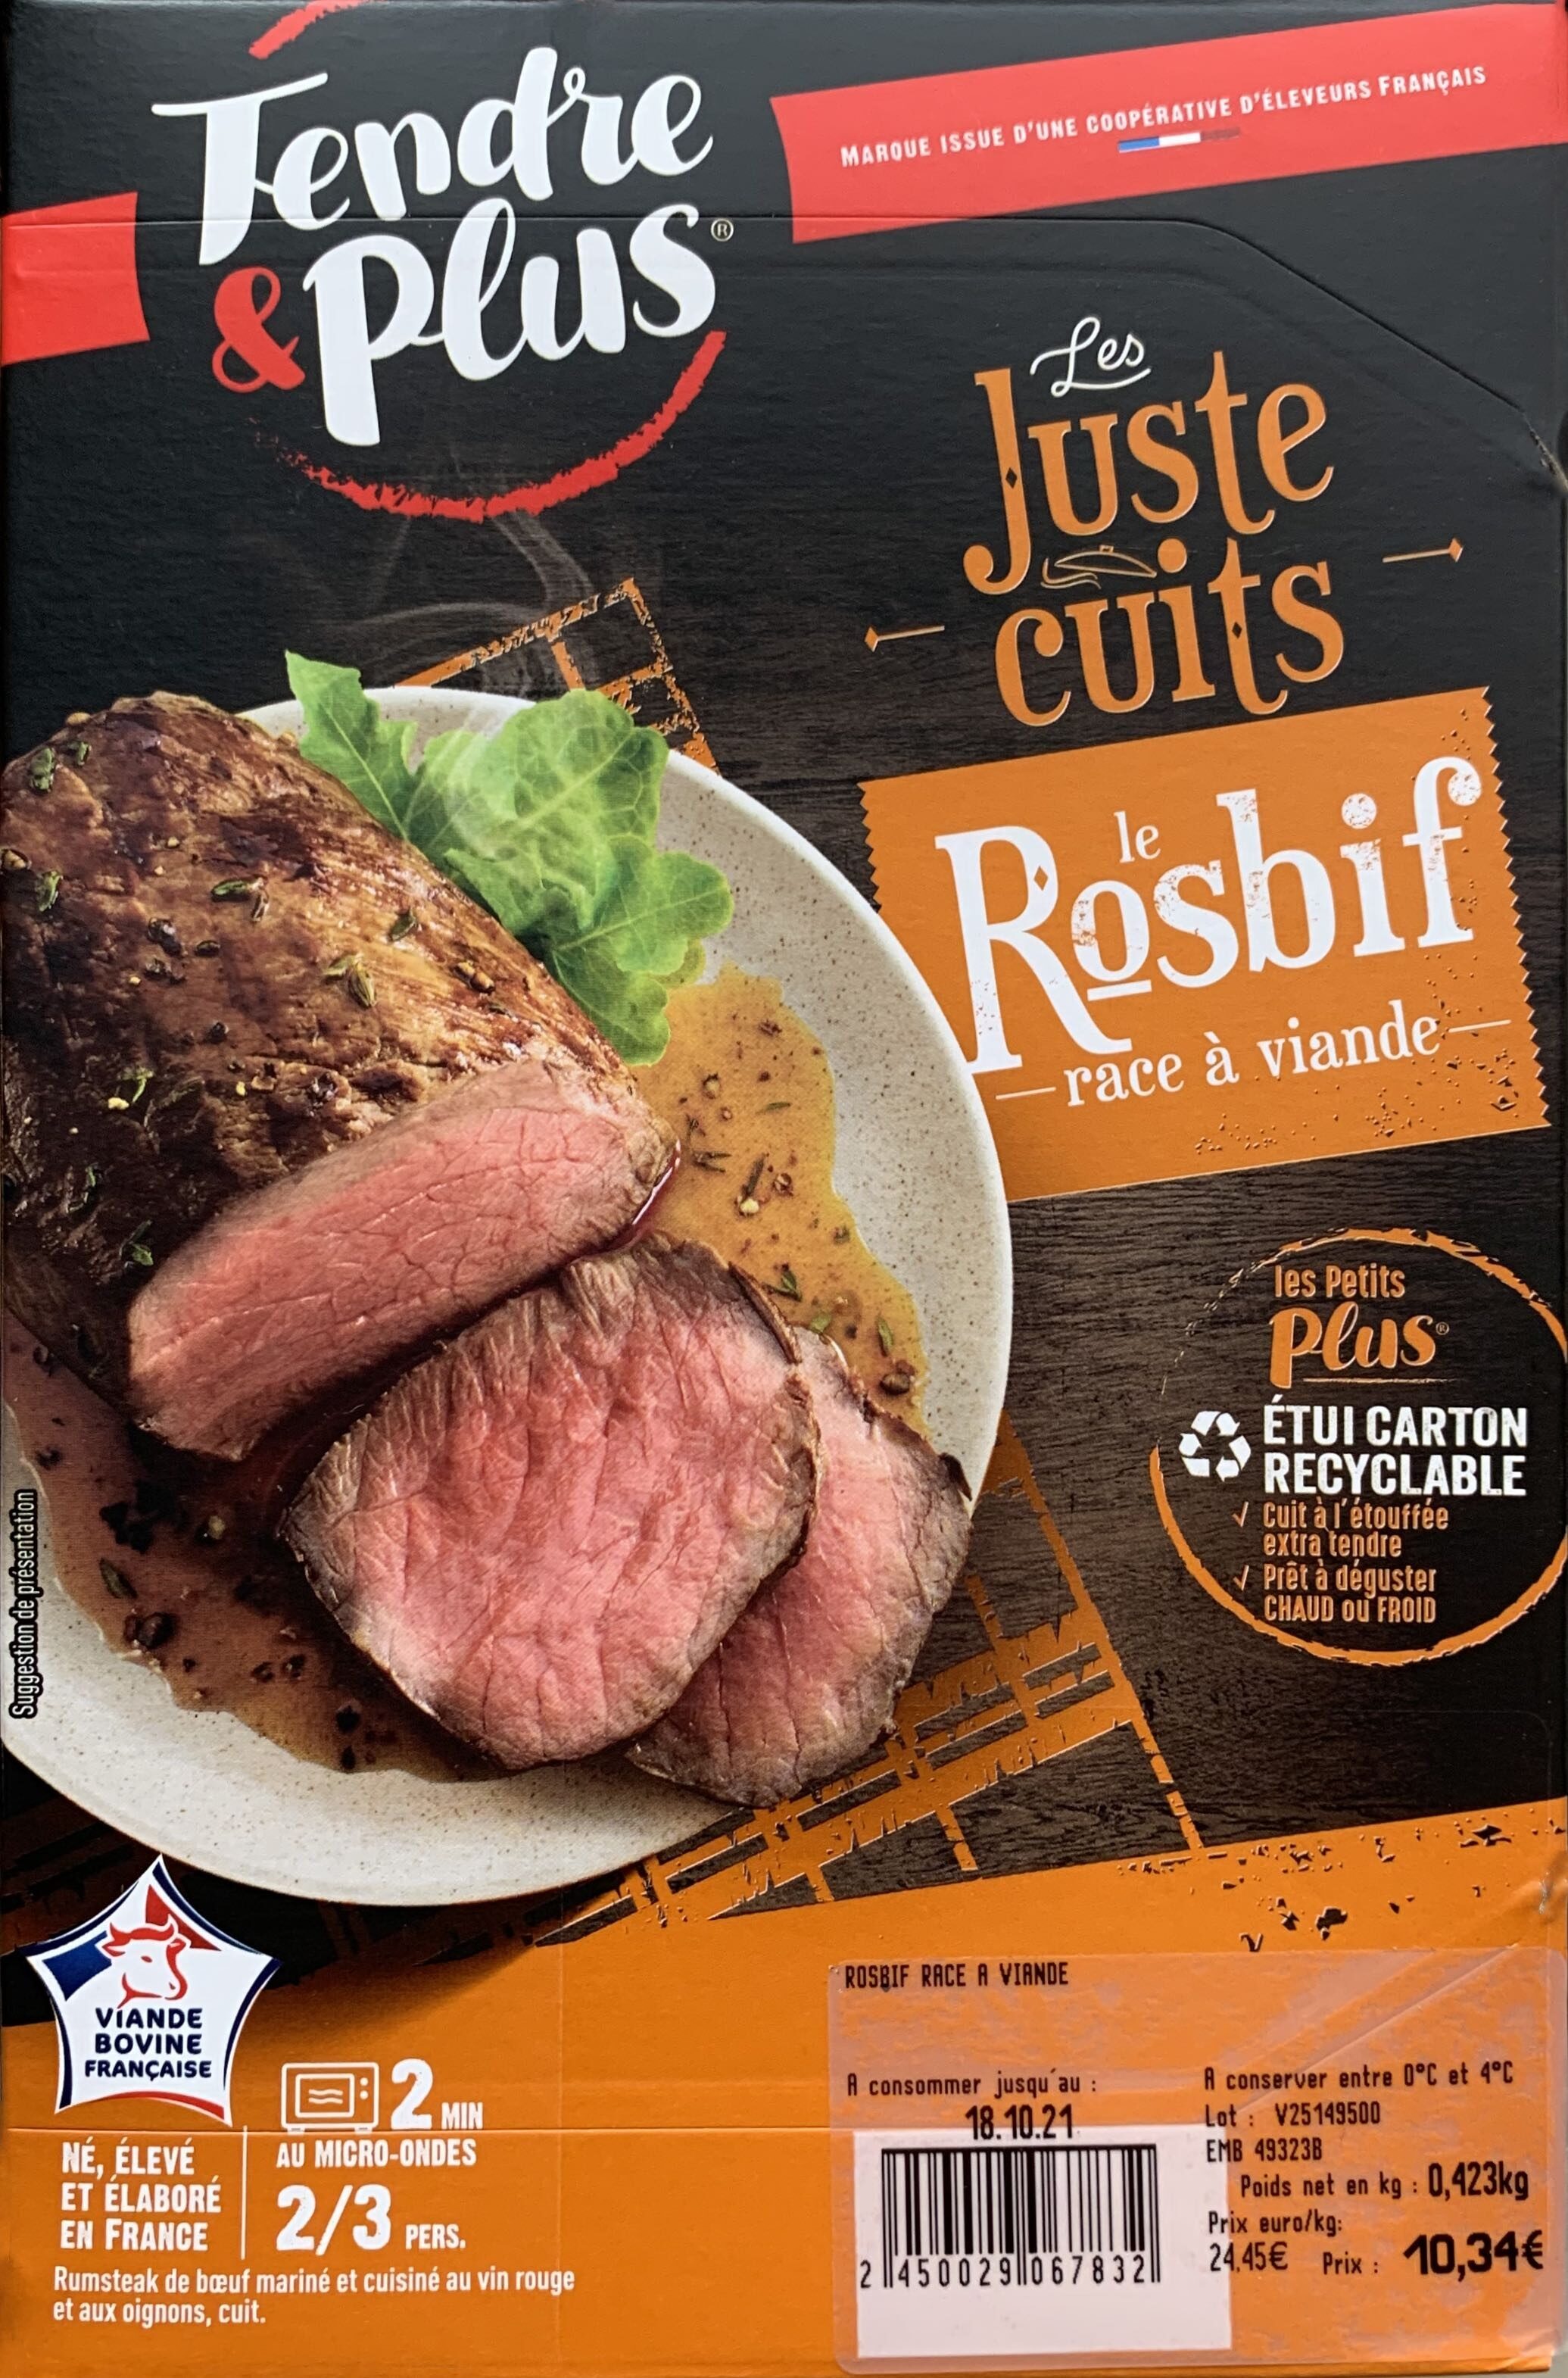 Le Rosbif - Les Juste Cuits - Product - fr